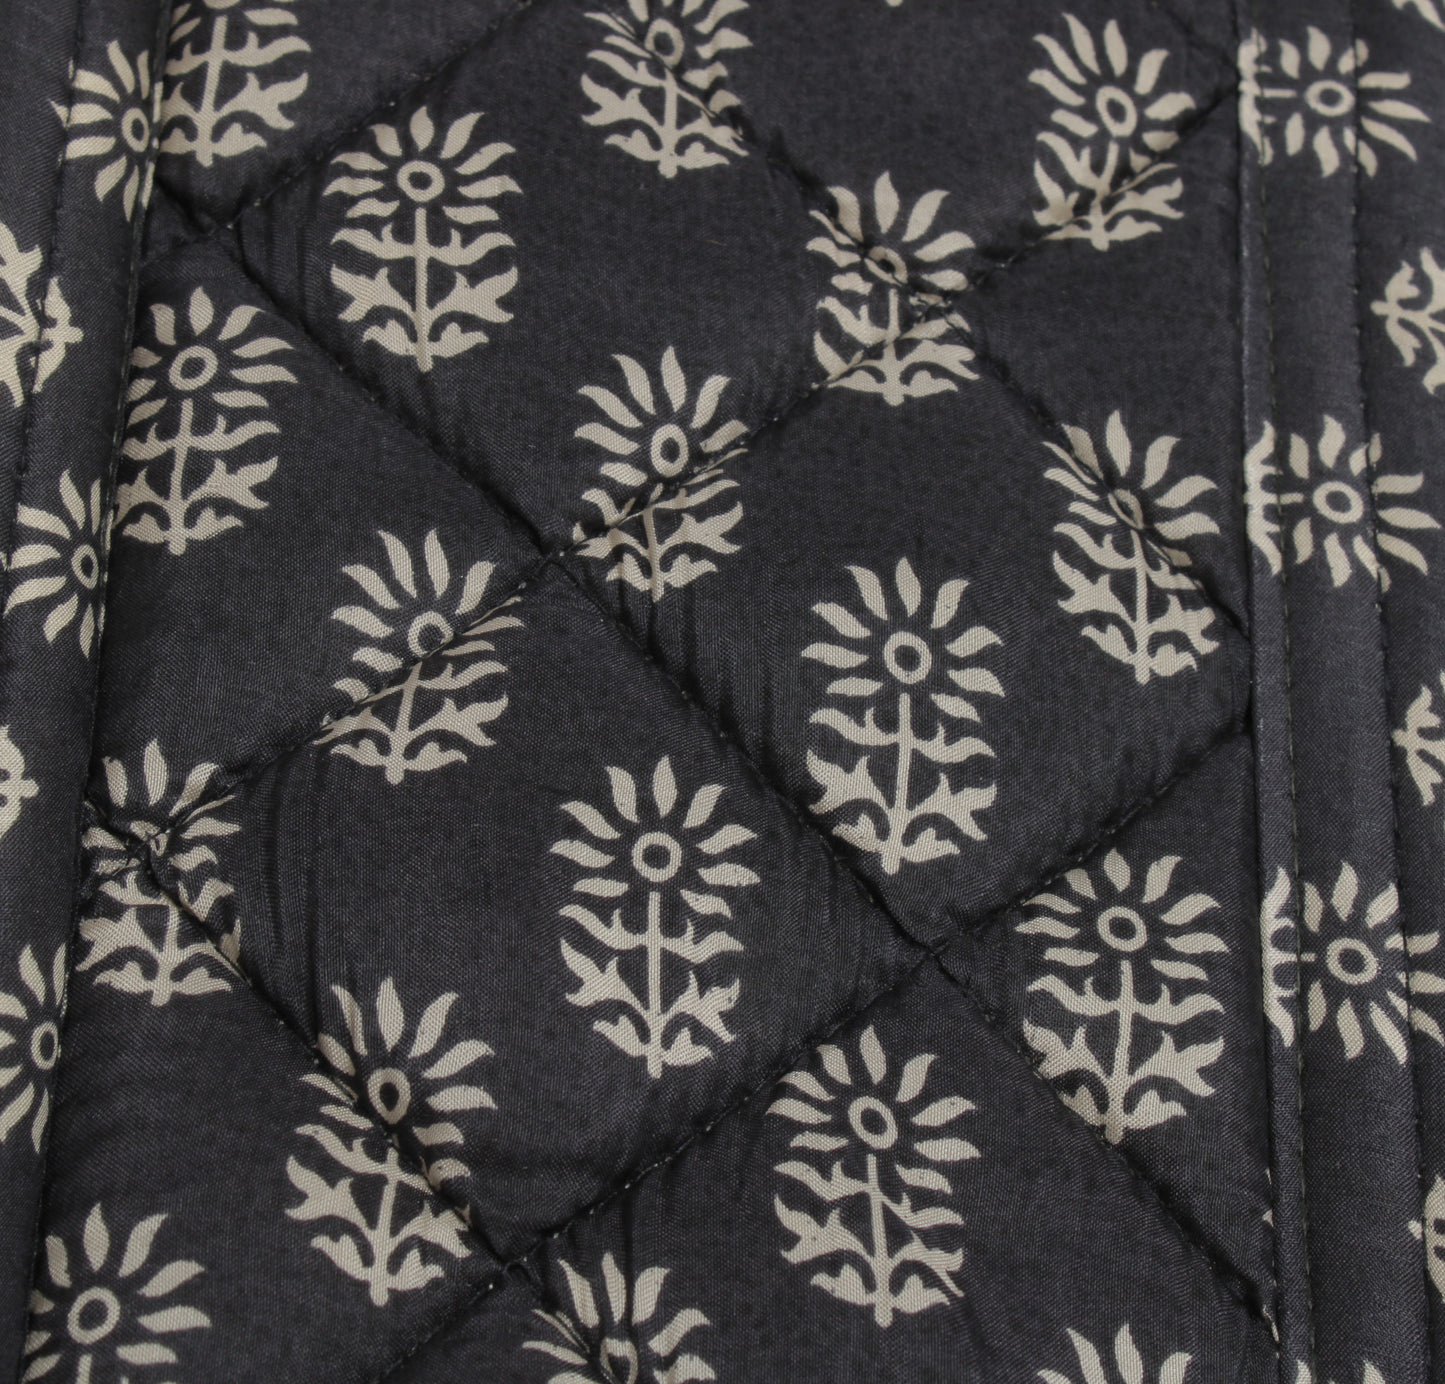 Sushila Vintage Black Tote Bag 100% Pure Silk Printed Handbag Shoulder Bag